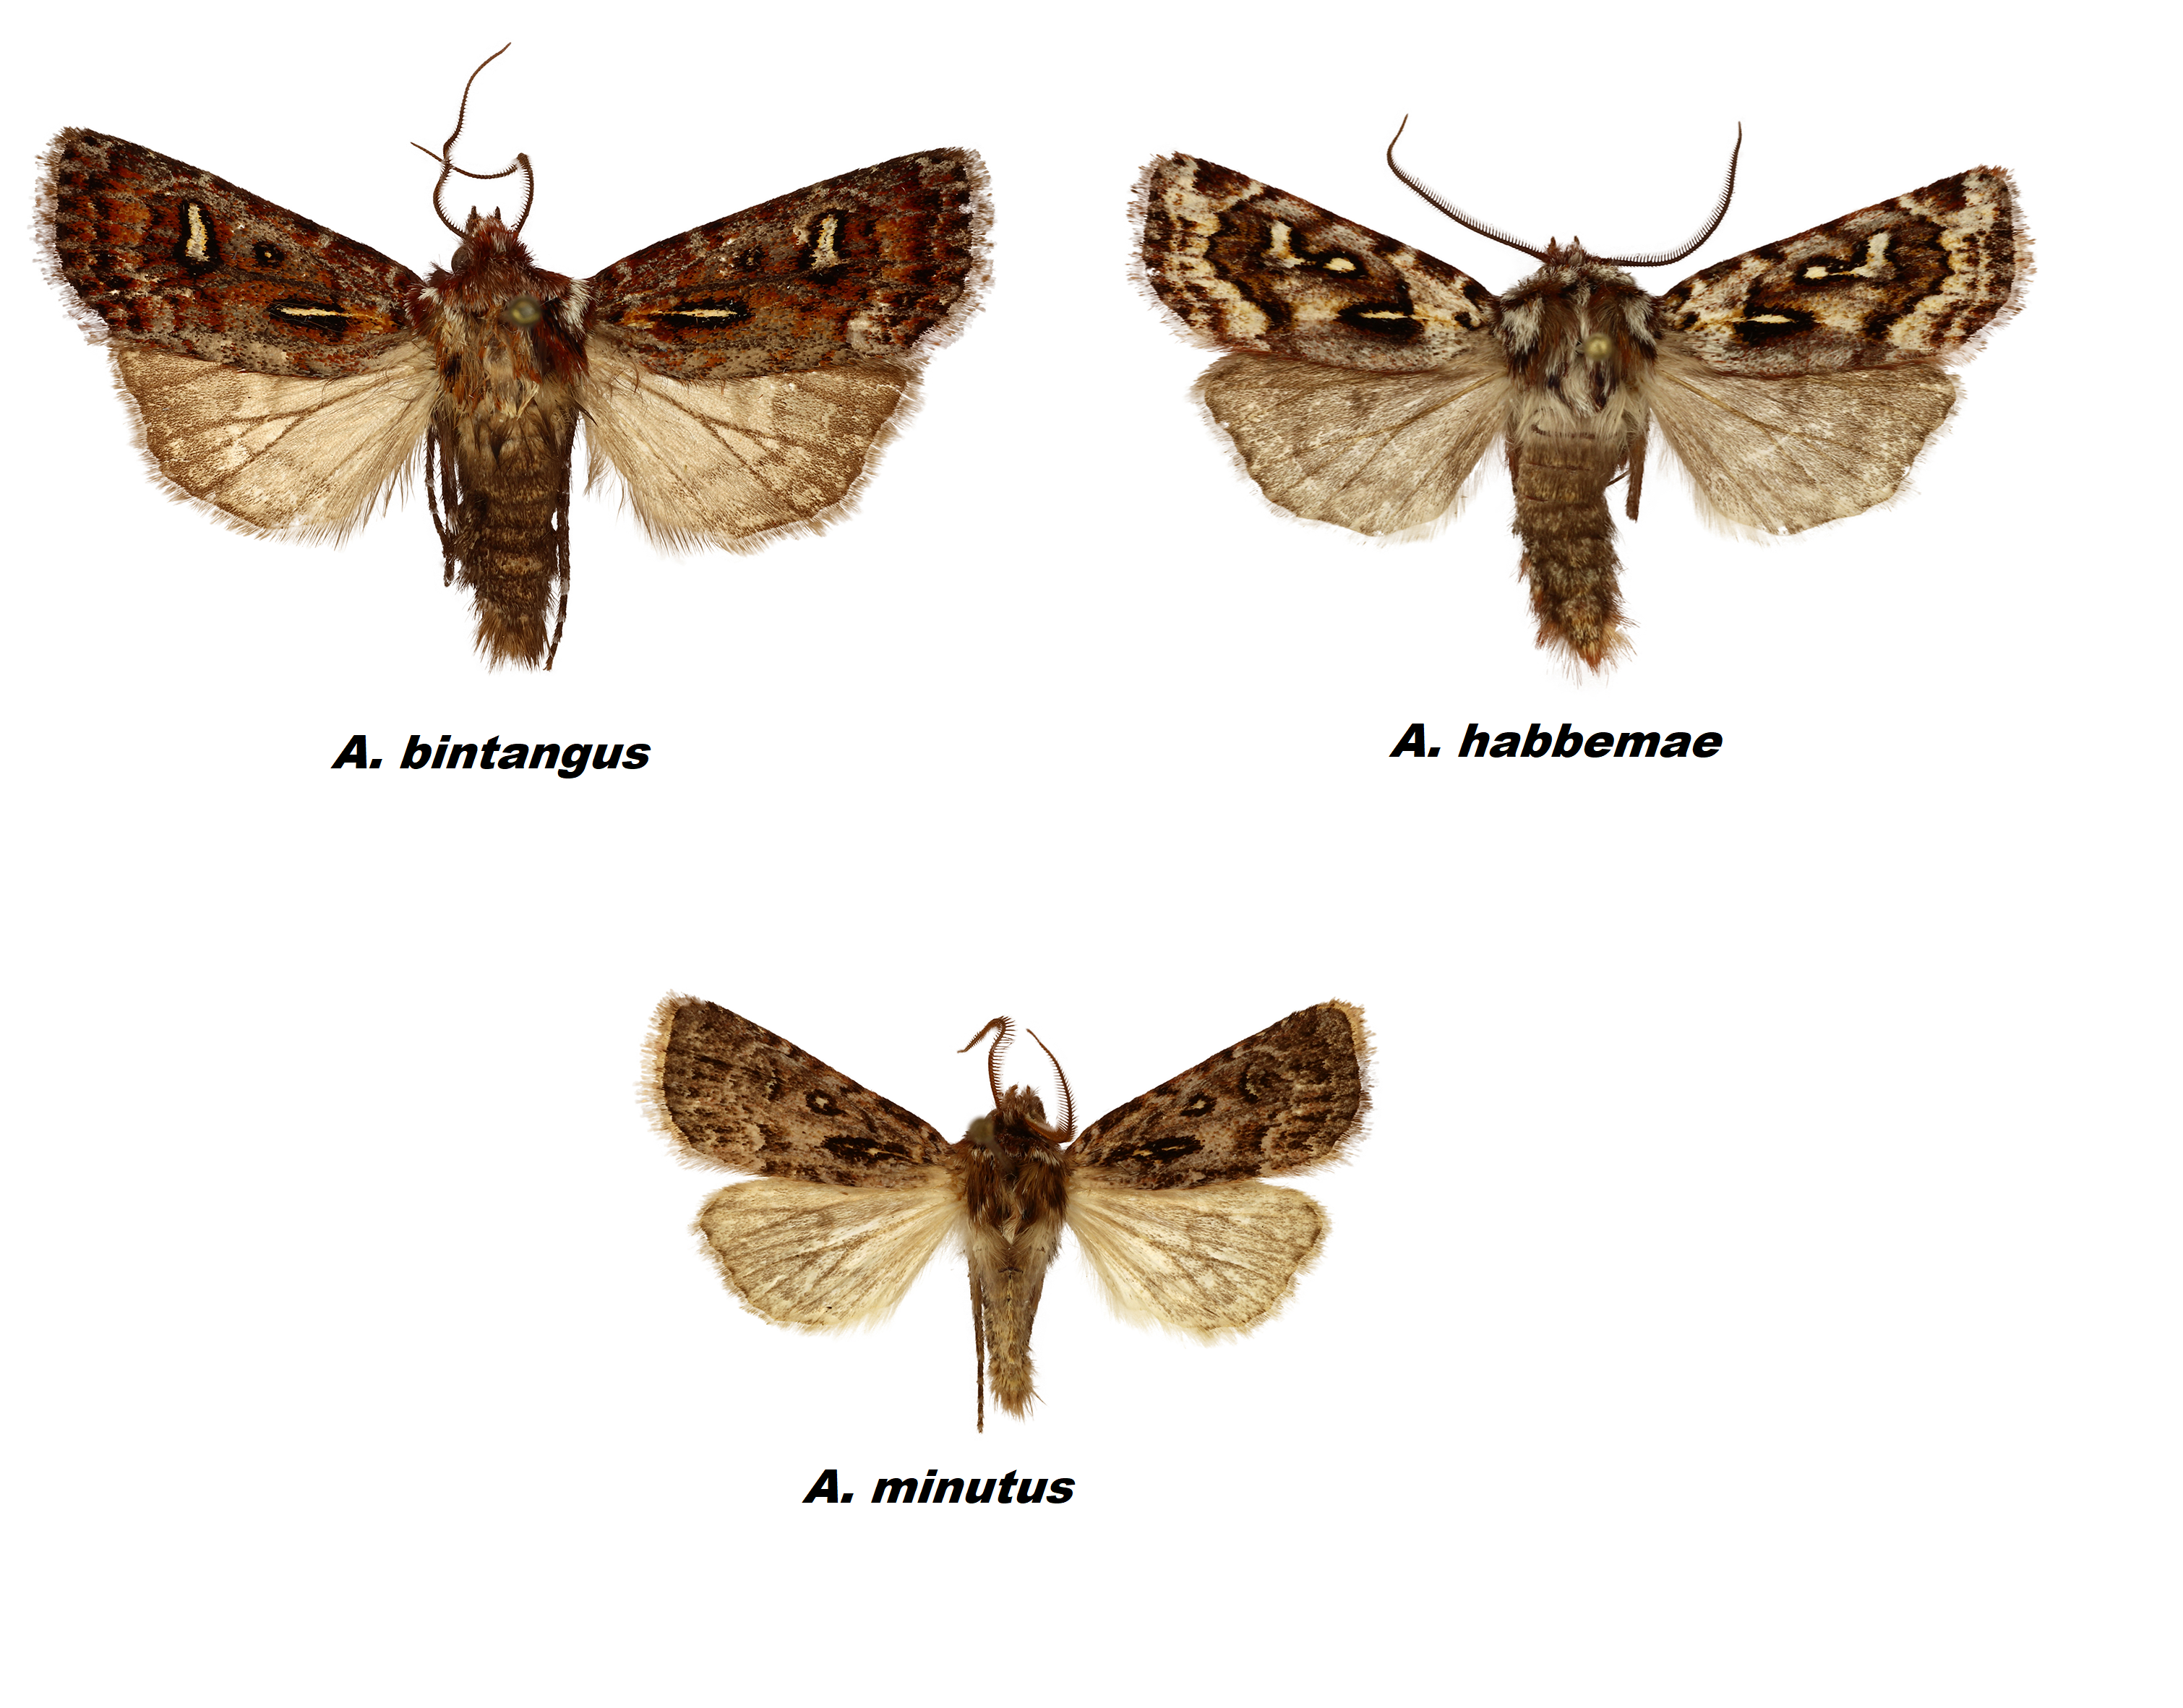 De drie vlindersoorten